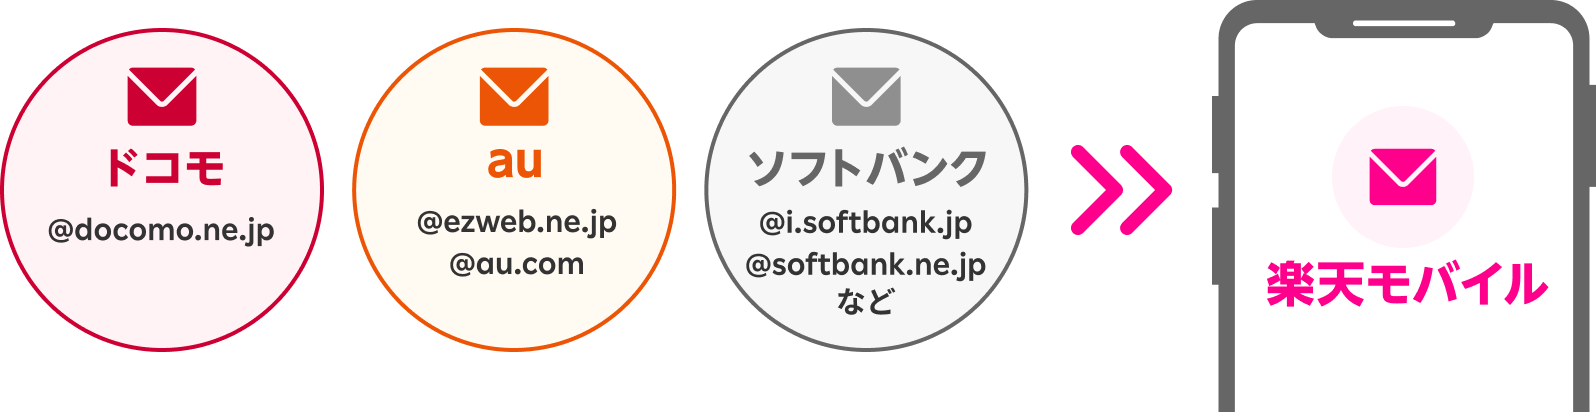 ドコモの@docomo.ne.jpも、auの@ezweb.ne.jpも、@au.comも、ソフトバンクの@i.softbank.jpも@softbank.ne.jpもご利用中の携帯電話会社のドメインメールがそのまま楽天モバイルで使える！